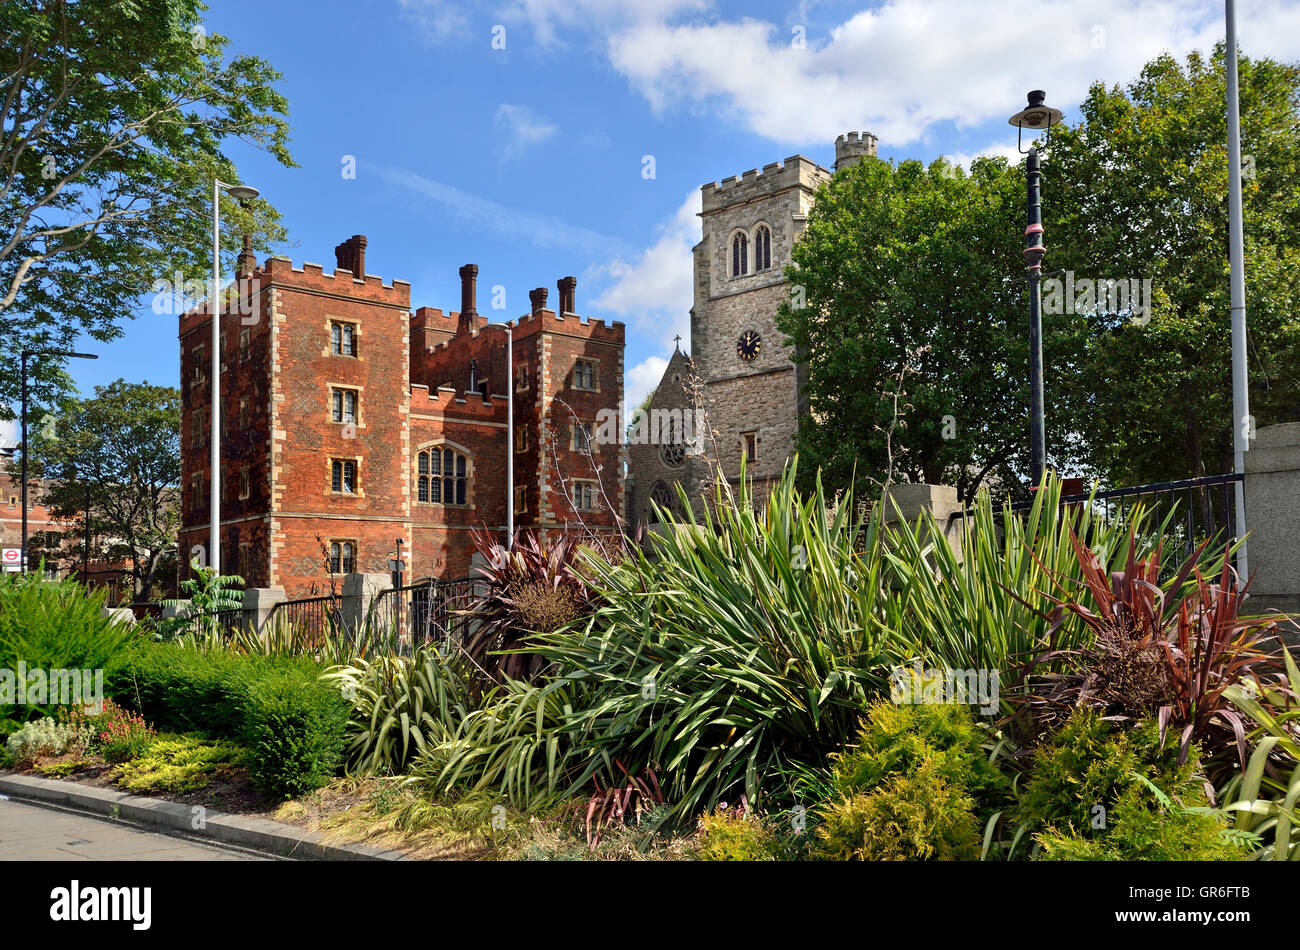 Londres, Angleterre, Royaume-Uni. Lambeth Palace - résidence officielle de l'archevêque de Canterbury Banque D'Images